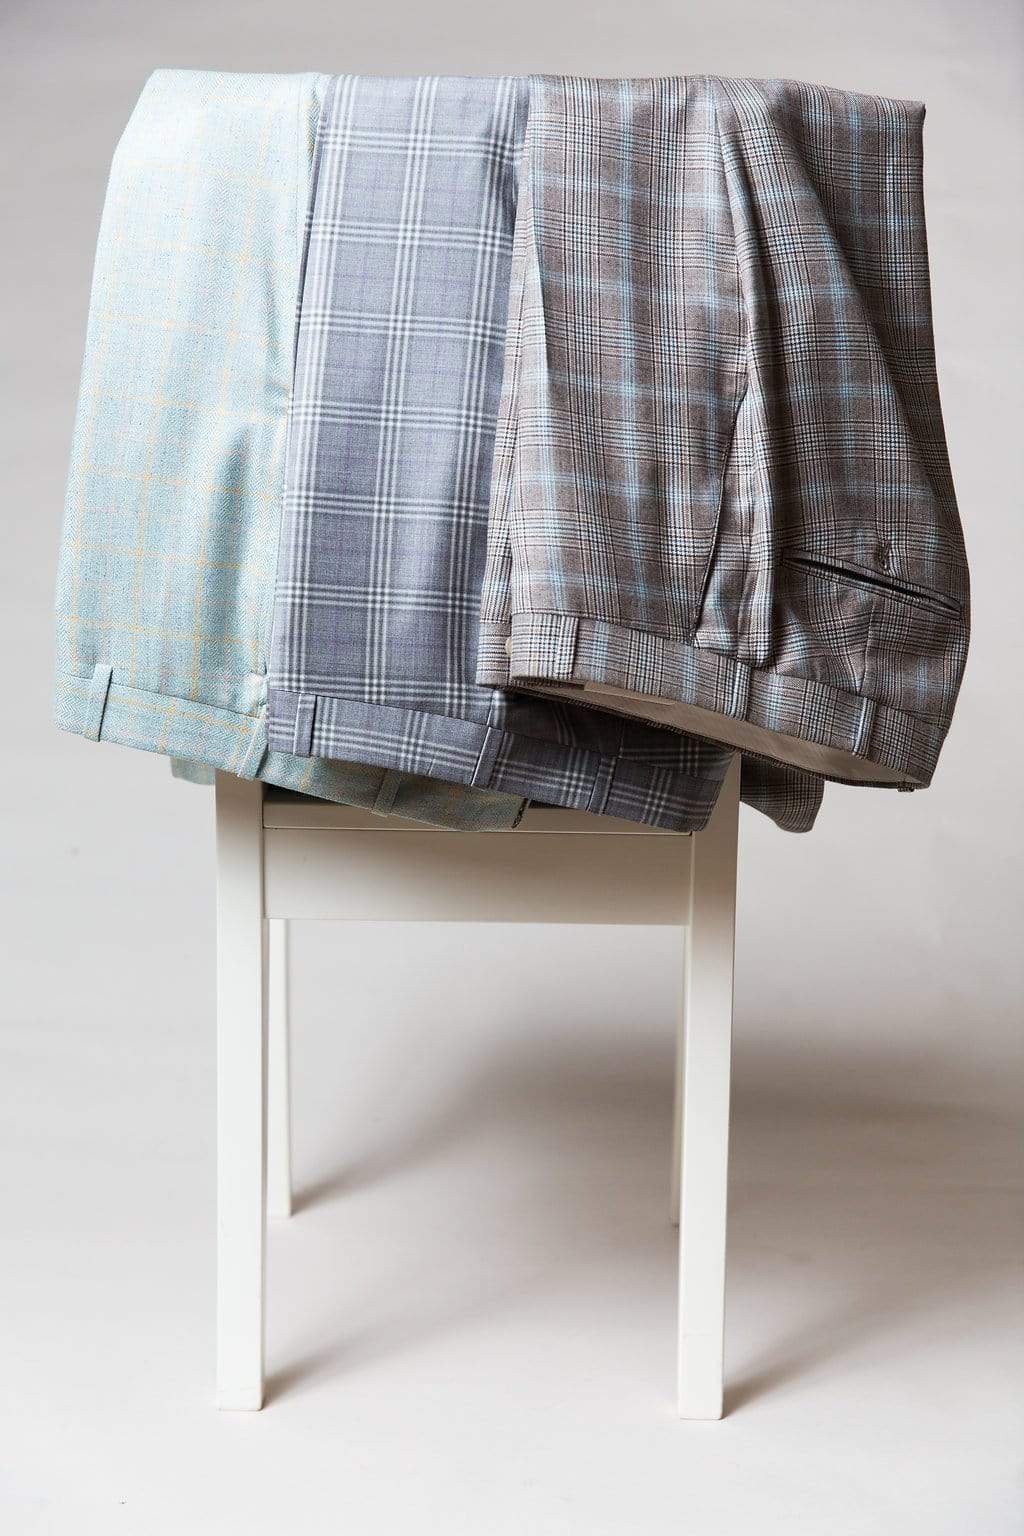 Bespoke Trousers| Lingo Luxe Bespoke Trouser of Piacenza Fabric